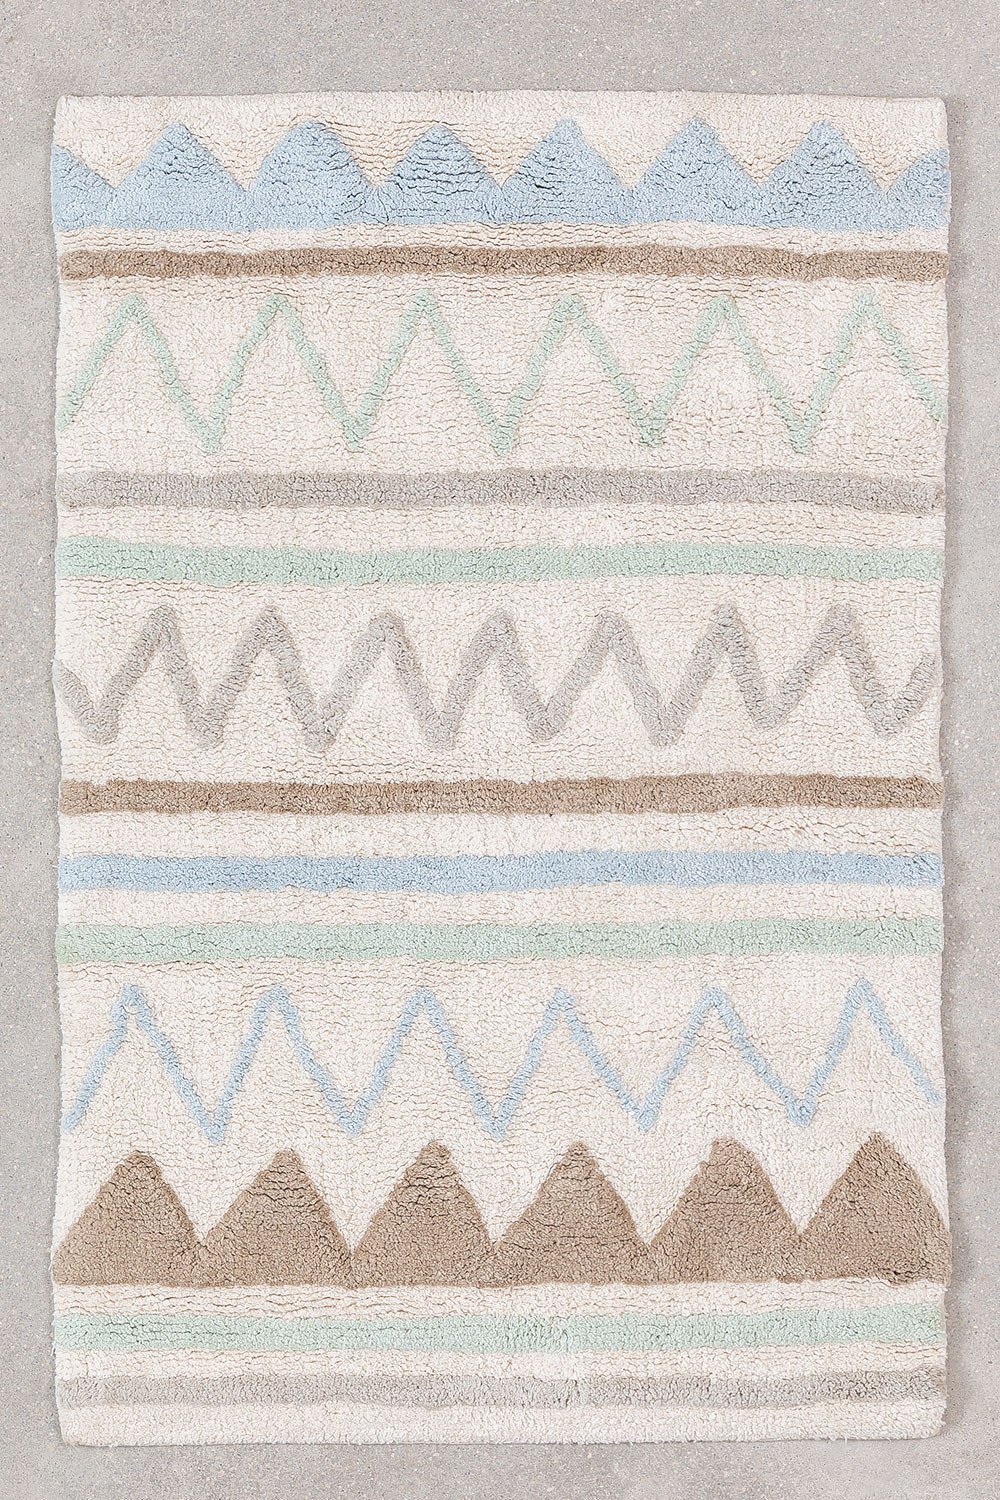 Tapis Coton (60X95 cm) Miko KIDS, image de la galerie 1